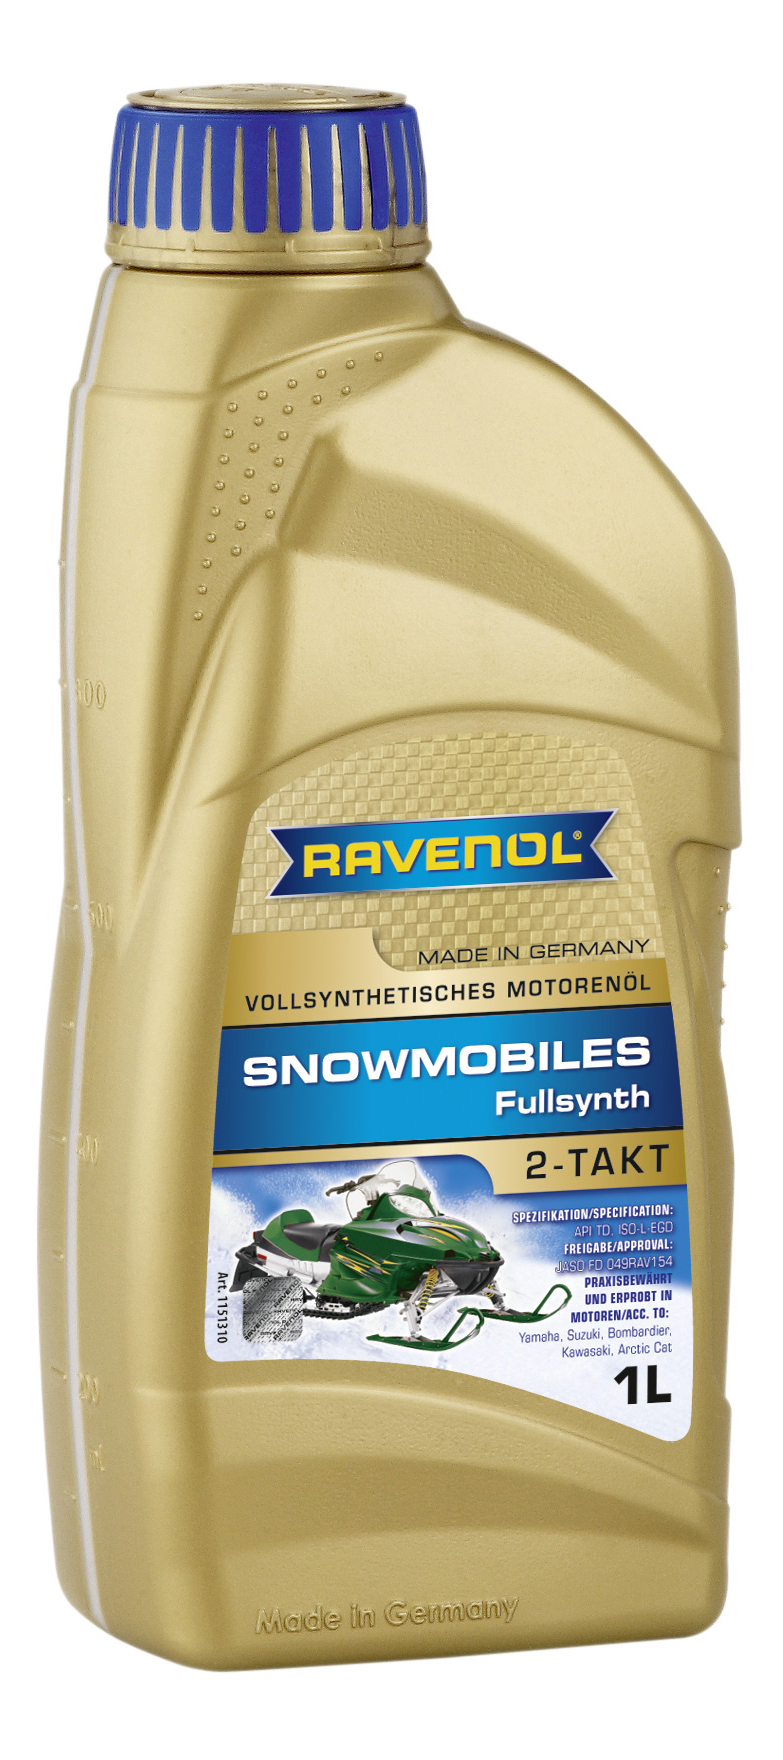 Масло для 2-Такт снегоходов RAVENOL Snowmobiles Fullsynth. 2-Takt (1 л) new 4014835727915